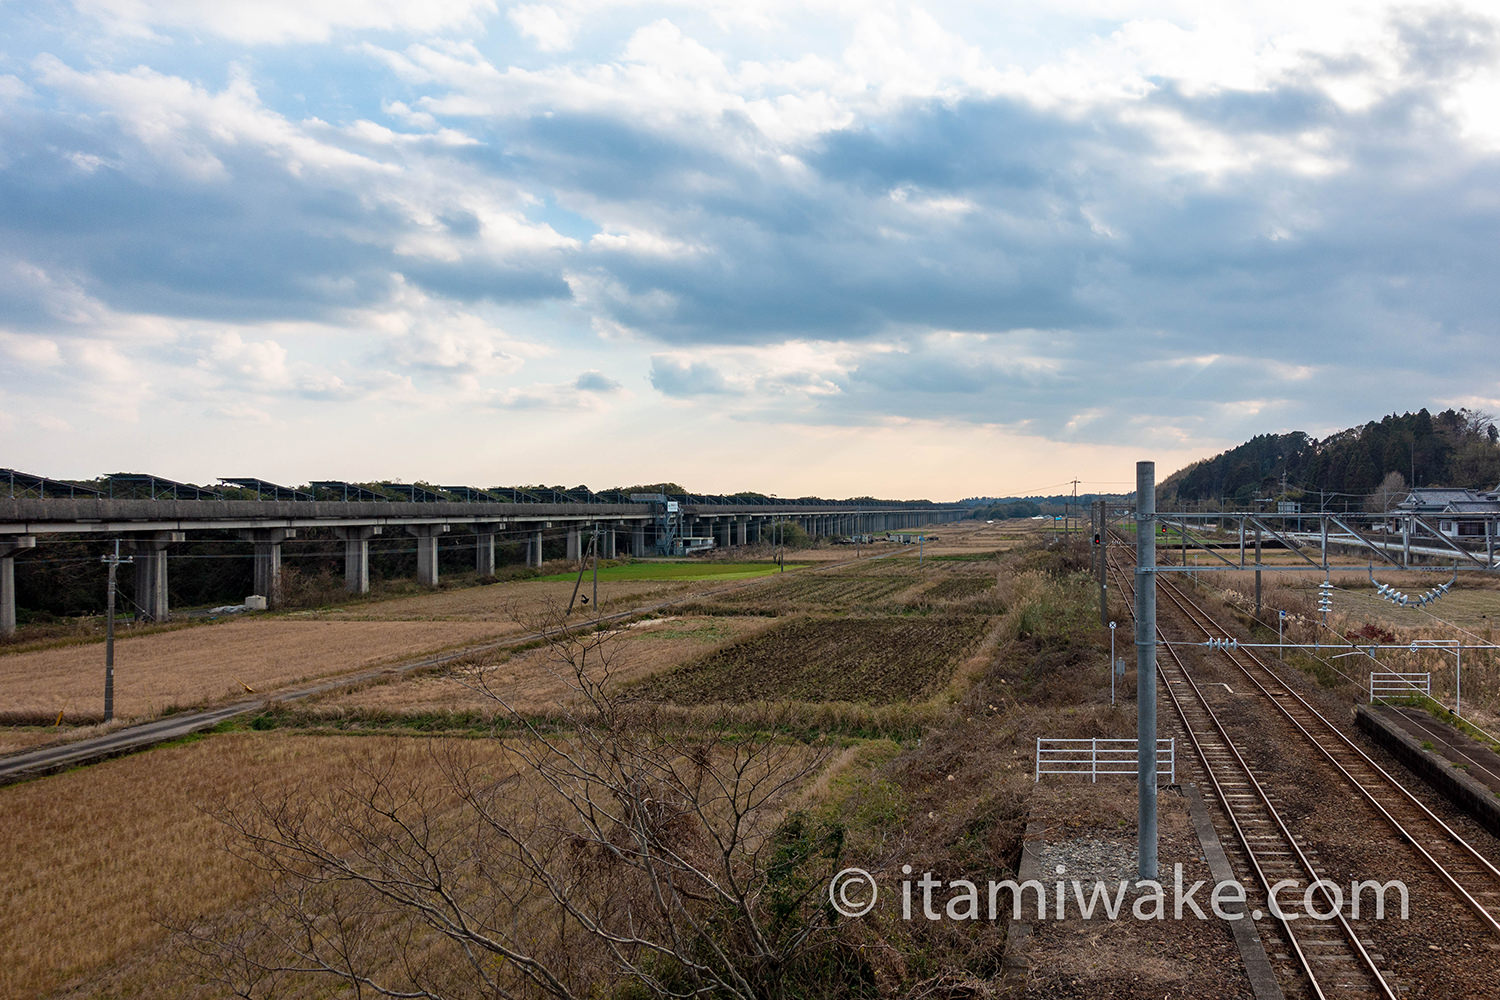 リニア実験線は宮崎にも！国鉄時代に作られ、山梨に役目を譲った「宮崎リニア実験線」の現状を見てきました。